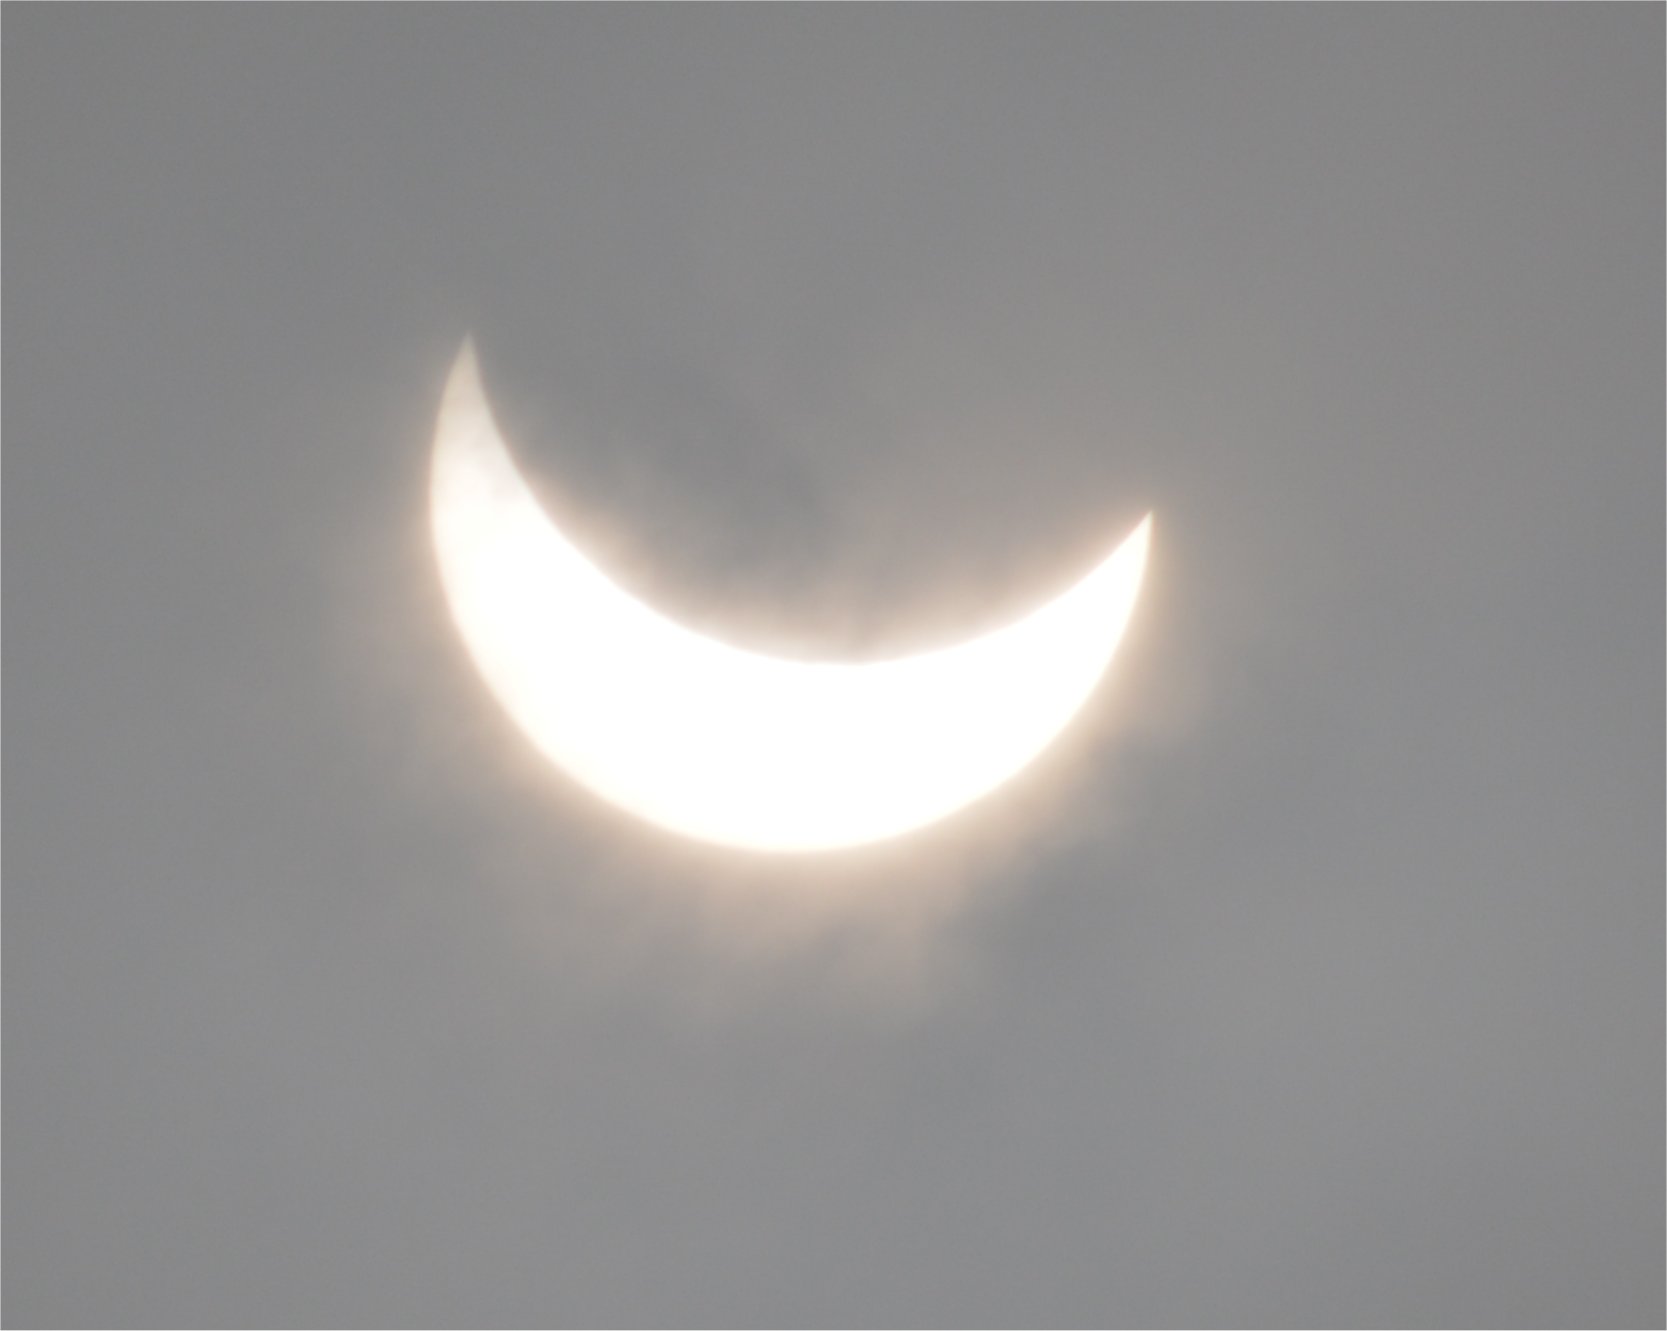 Nom : eclipse.jpg
Affichages : 60
Taille : 84,4 Ko